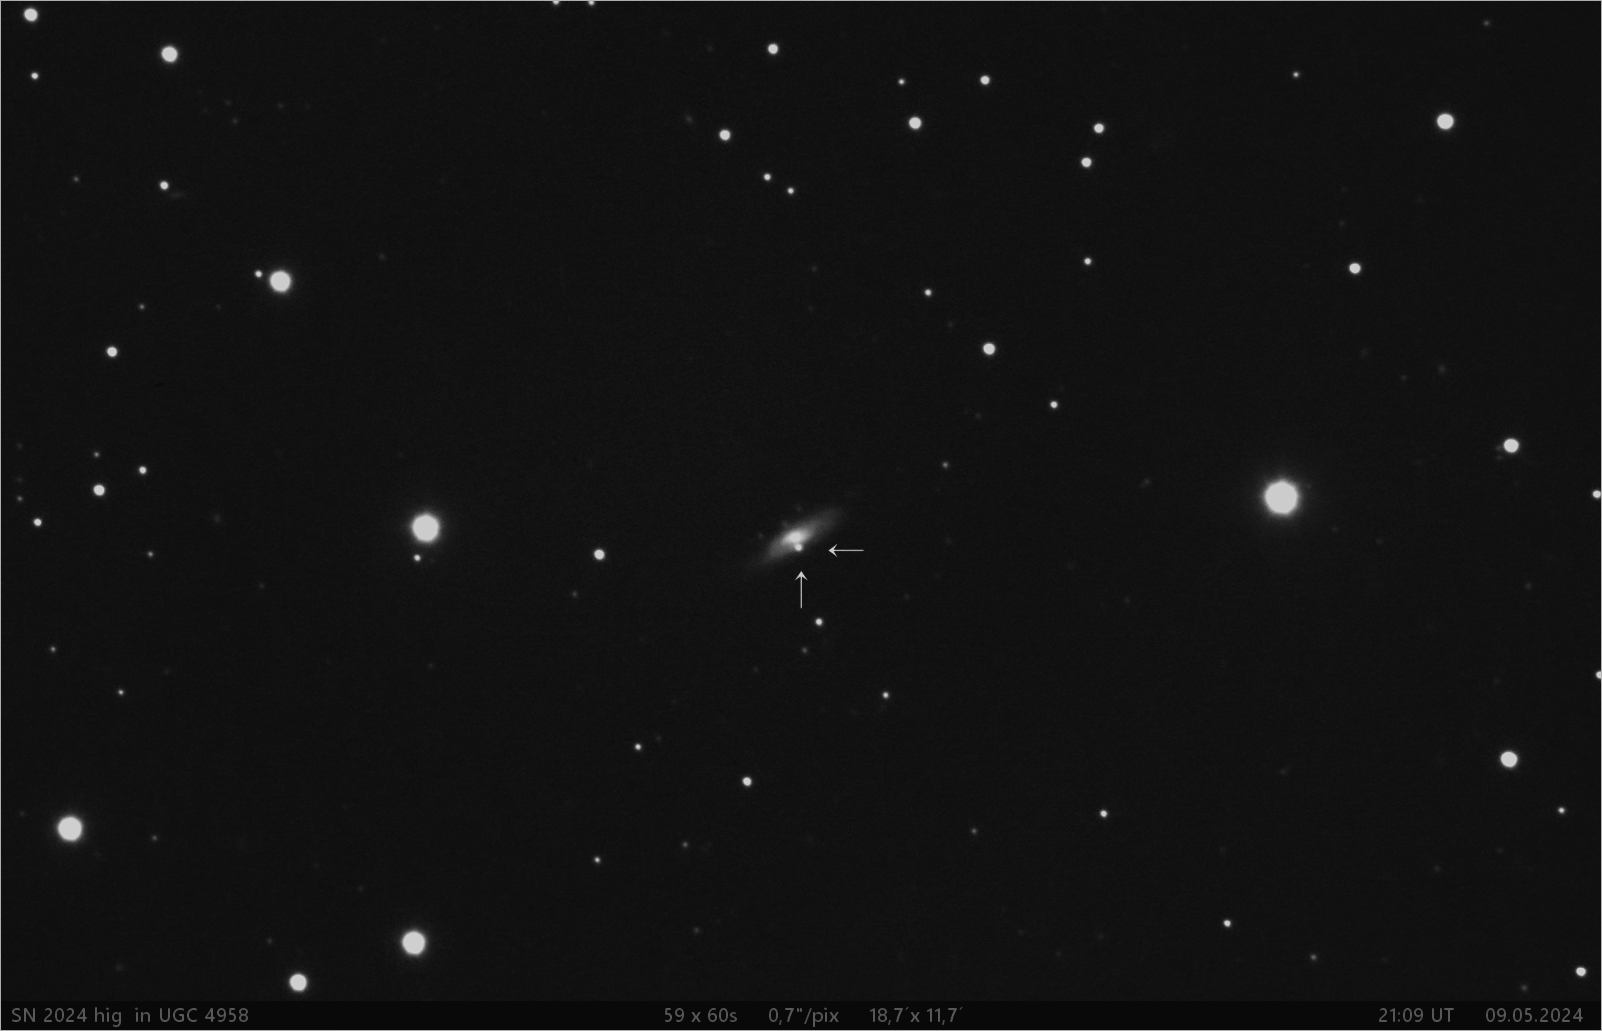 supernova SN 2024 hig v UGC4958